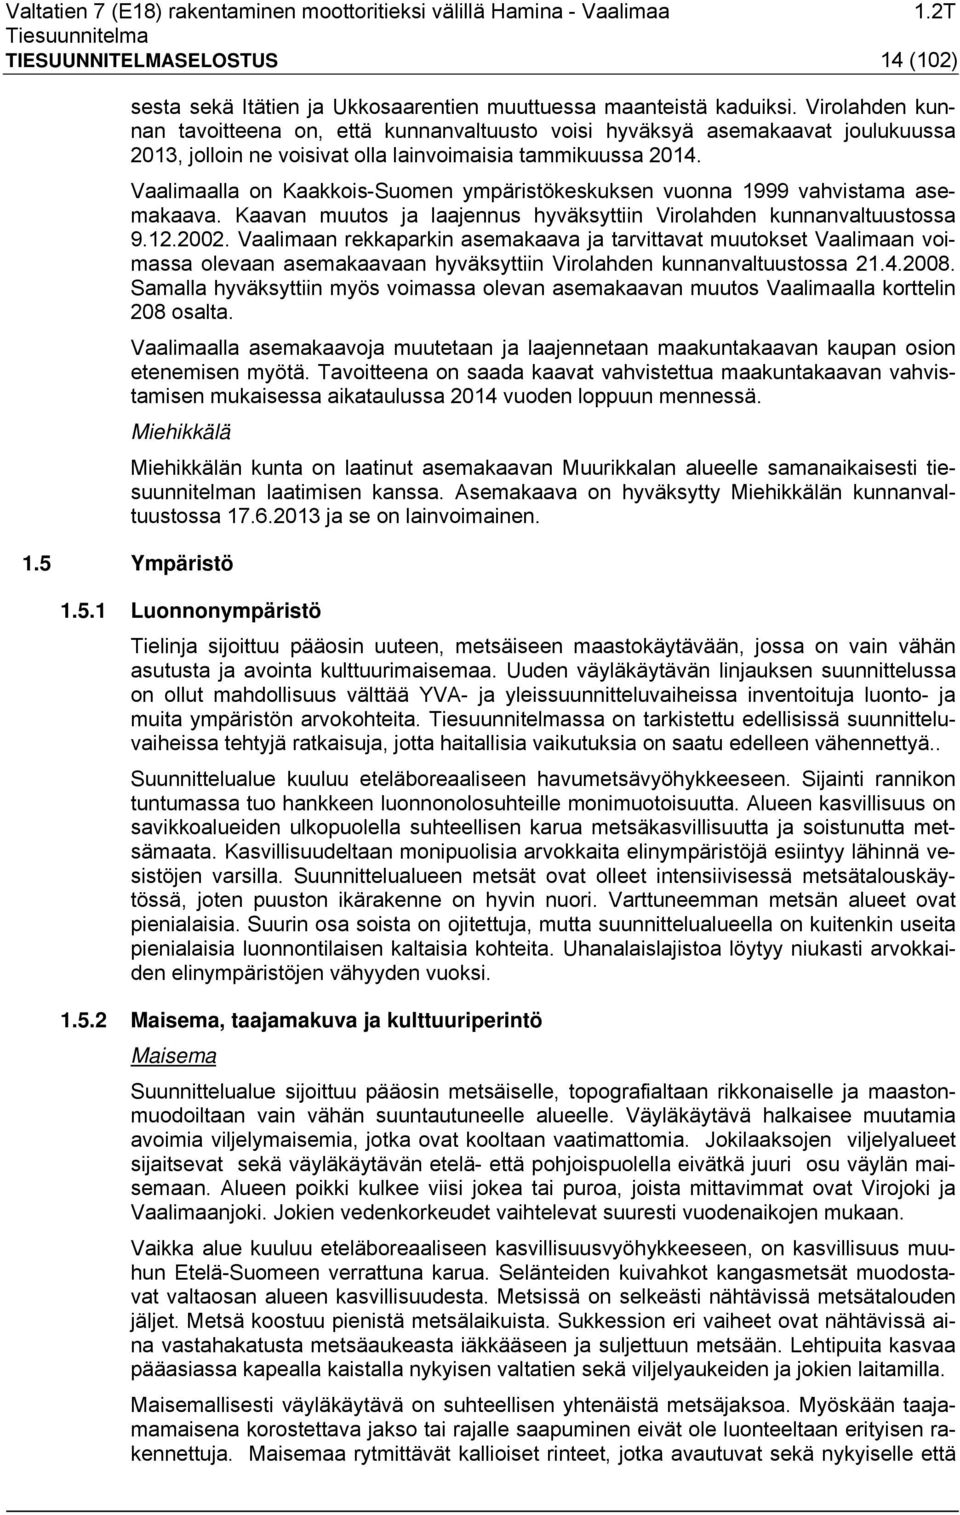 Vaalimaalla on Kaakkois-Suomen ympäristökeskuksen vuonna 1999 vahvistama asemakaava. Kaavan muutos ja laajennus hyväksyttiin Virolahden kunnanvaltuustossa 9.12.2002.